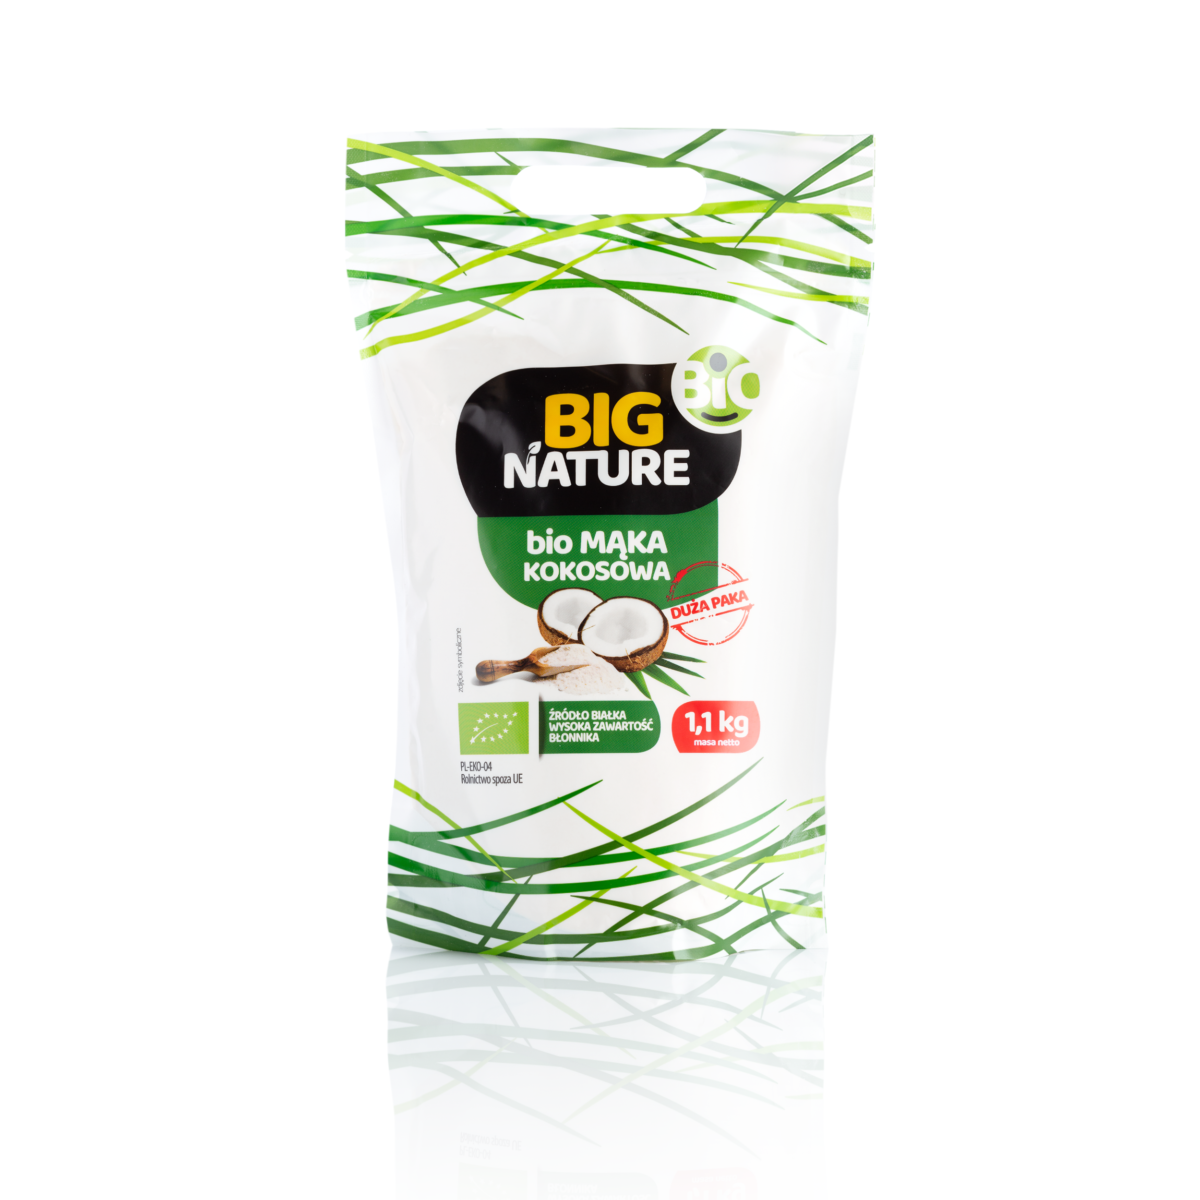 Mąka Kokosowa BIO z Big Nature. W zielono-białym opakowaniu znajduje się 1,1kg produktu.